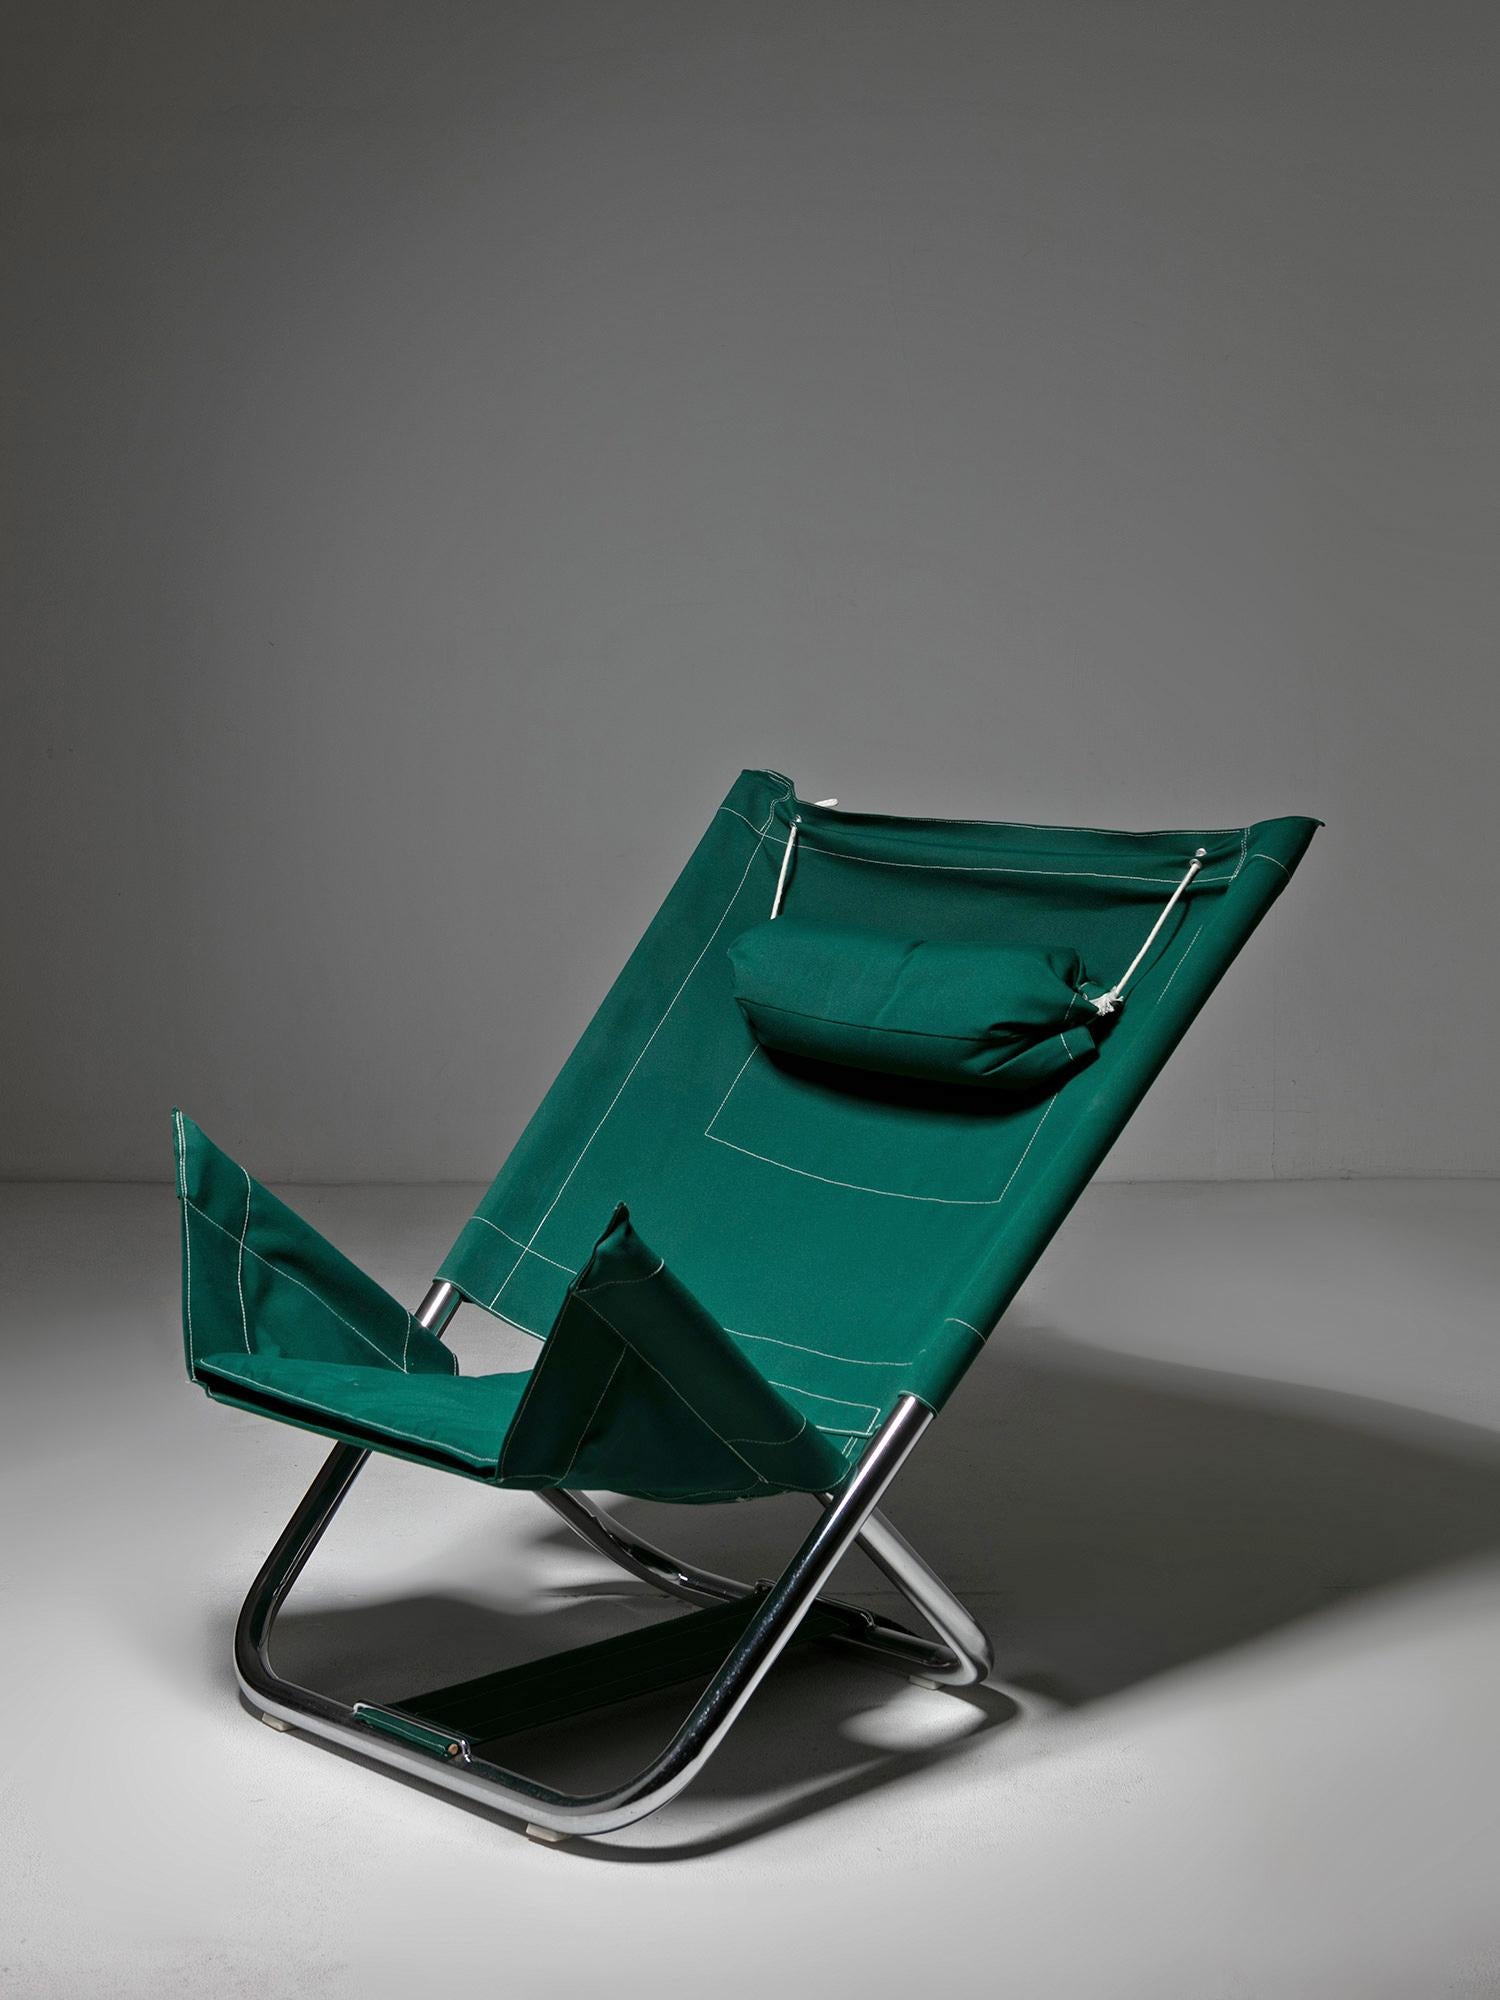 Foldes Sessel von Roberto Pamio und Renato Toso für Stilwood.
Gestell aus verchromtem Rohr und gemütlicher Sitz mit Kopfstütze und großer Tasche auf der Rückseite.